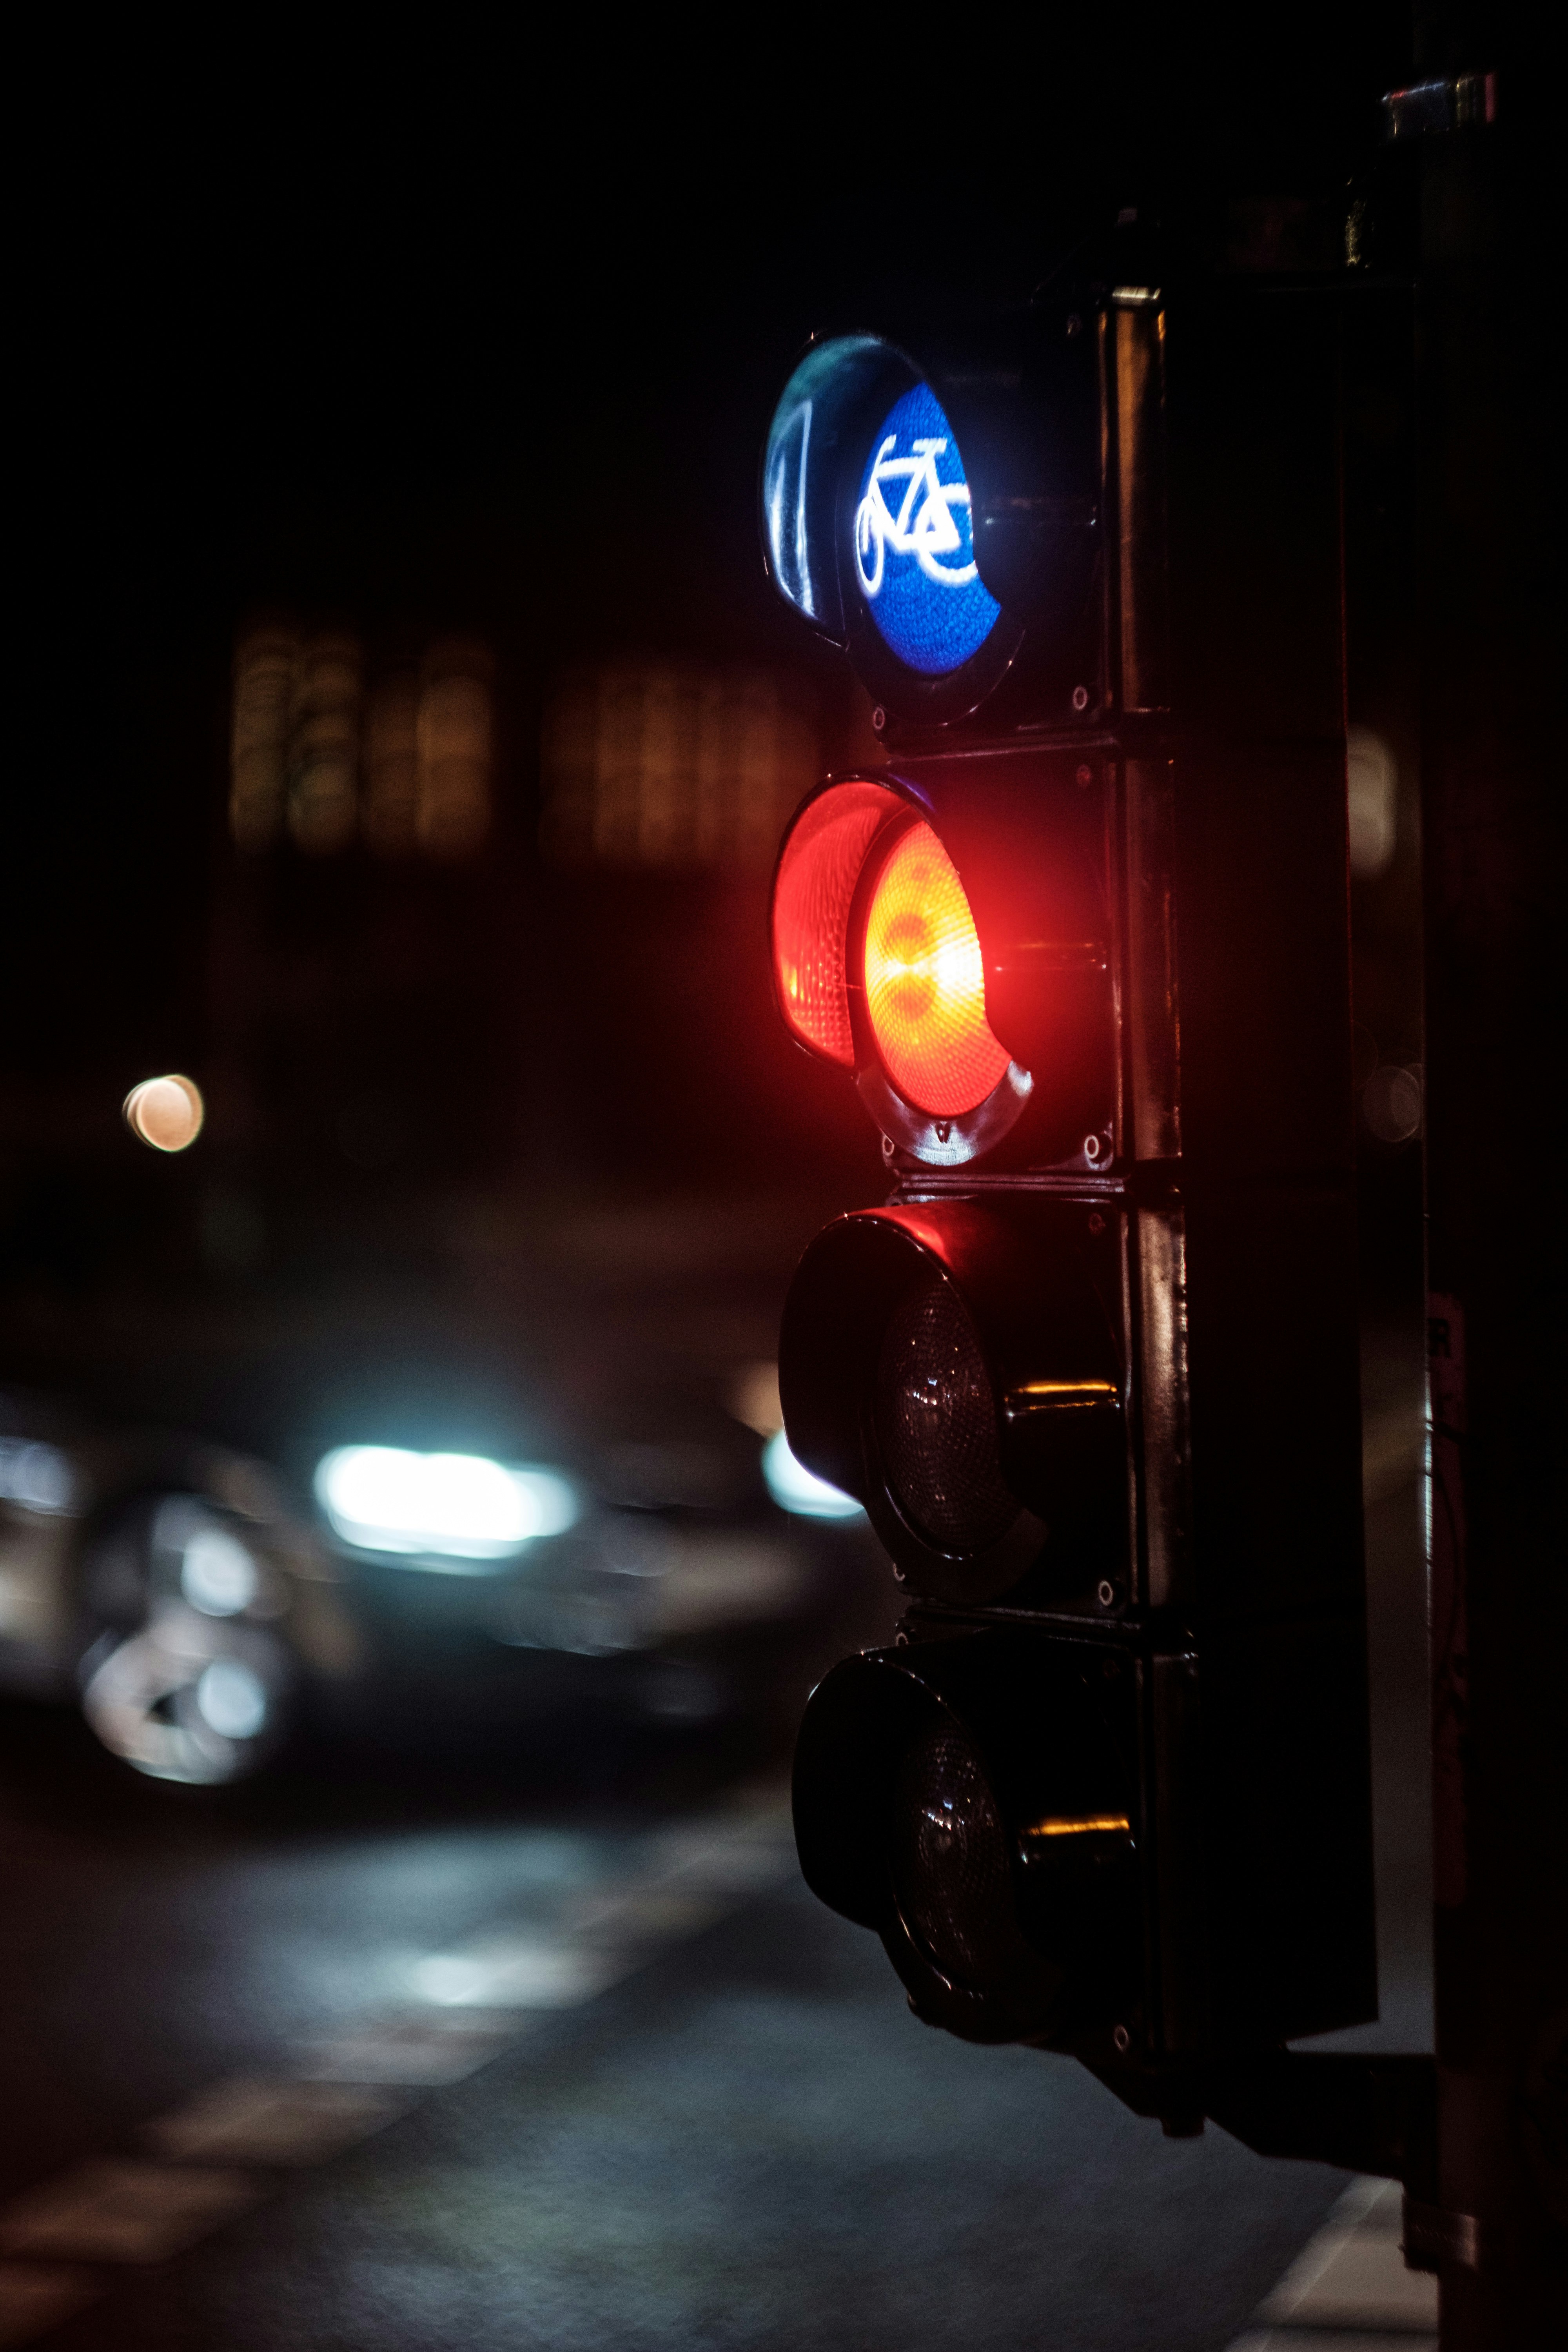 traffic light at night